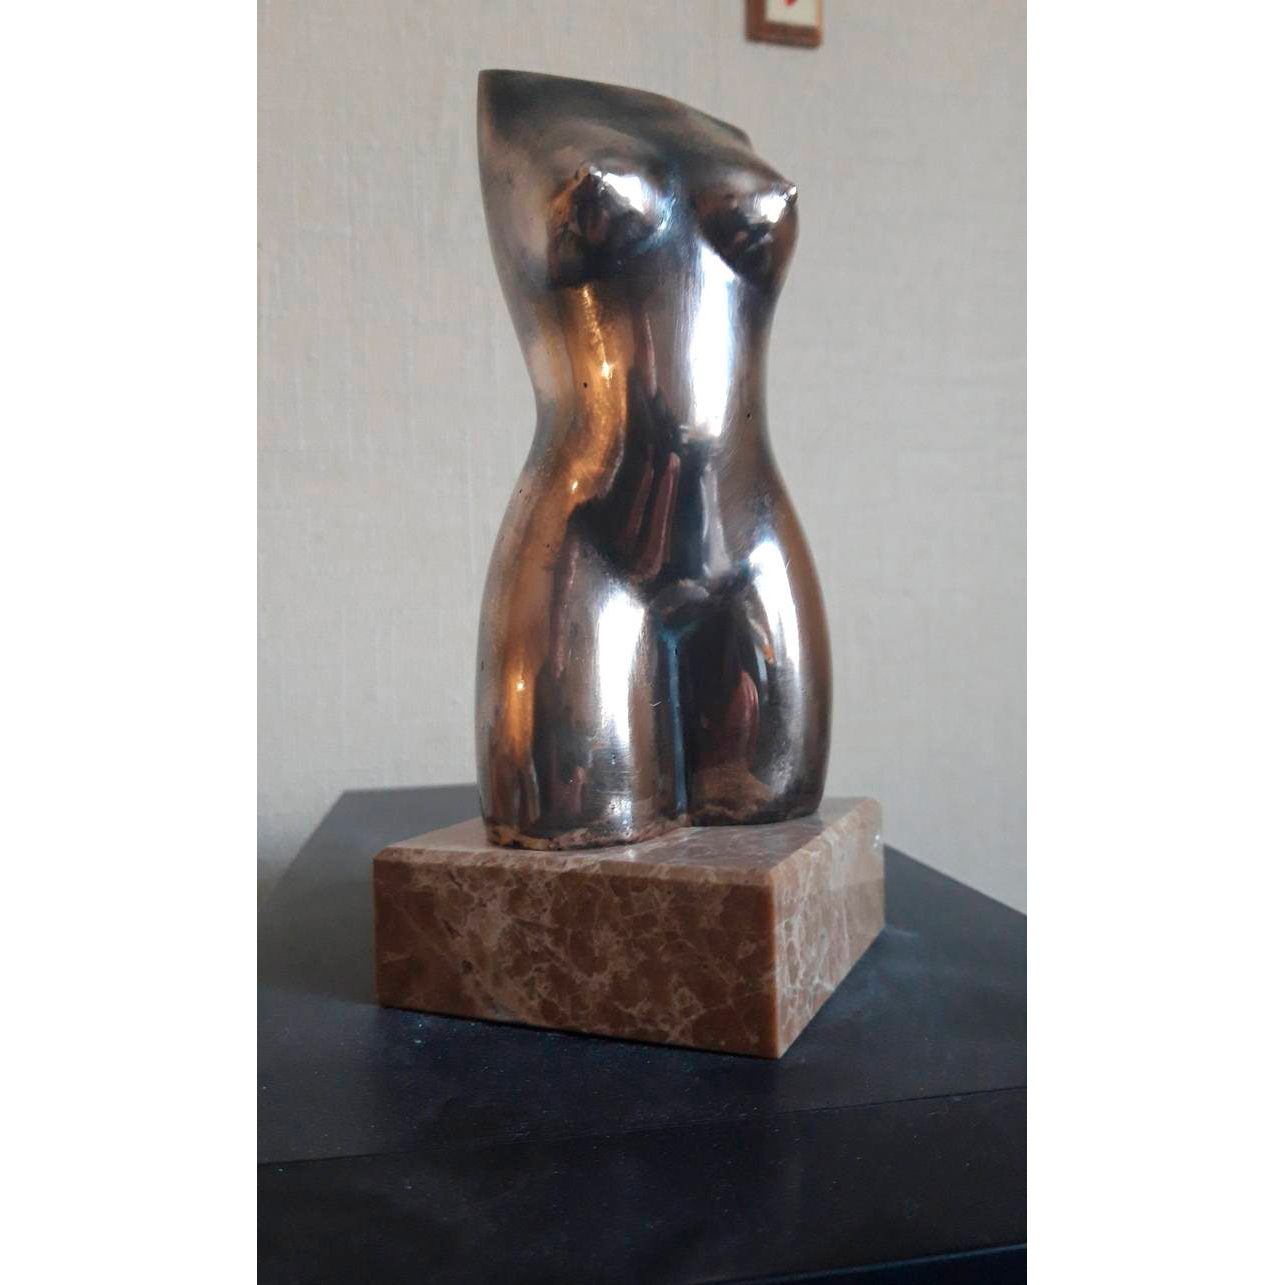 Bronze bust sculpture